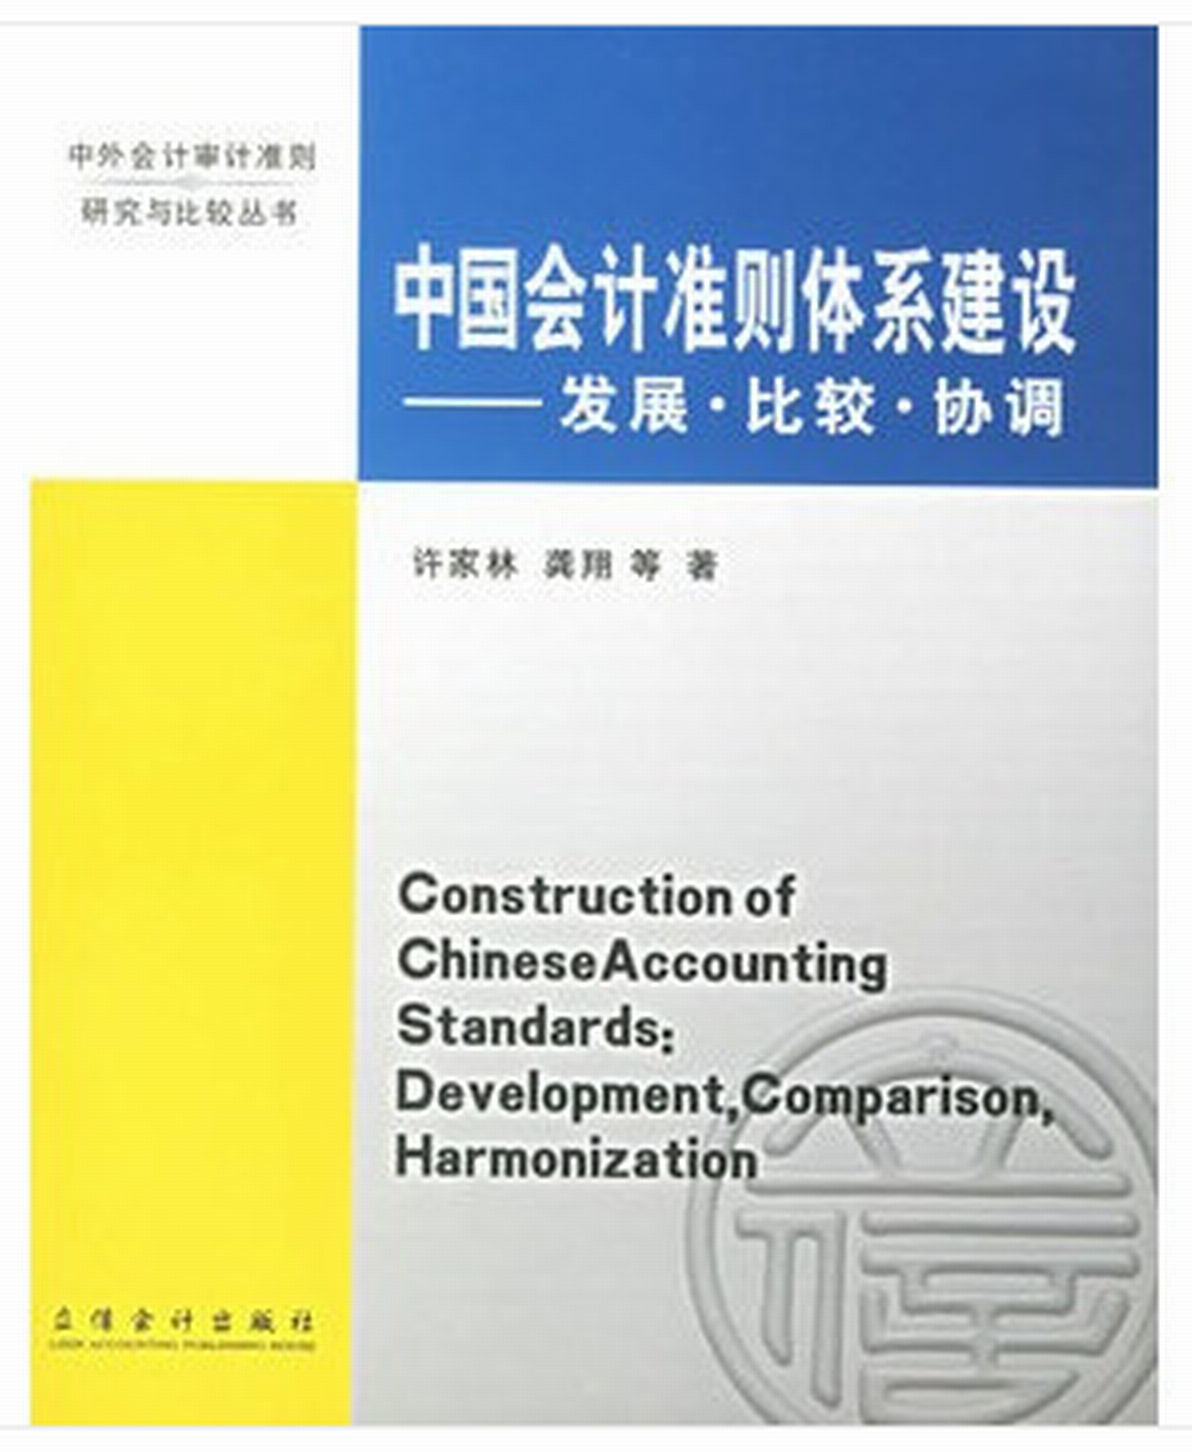 中國會計準則體系建設-發展、比較、協調